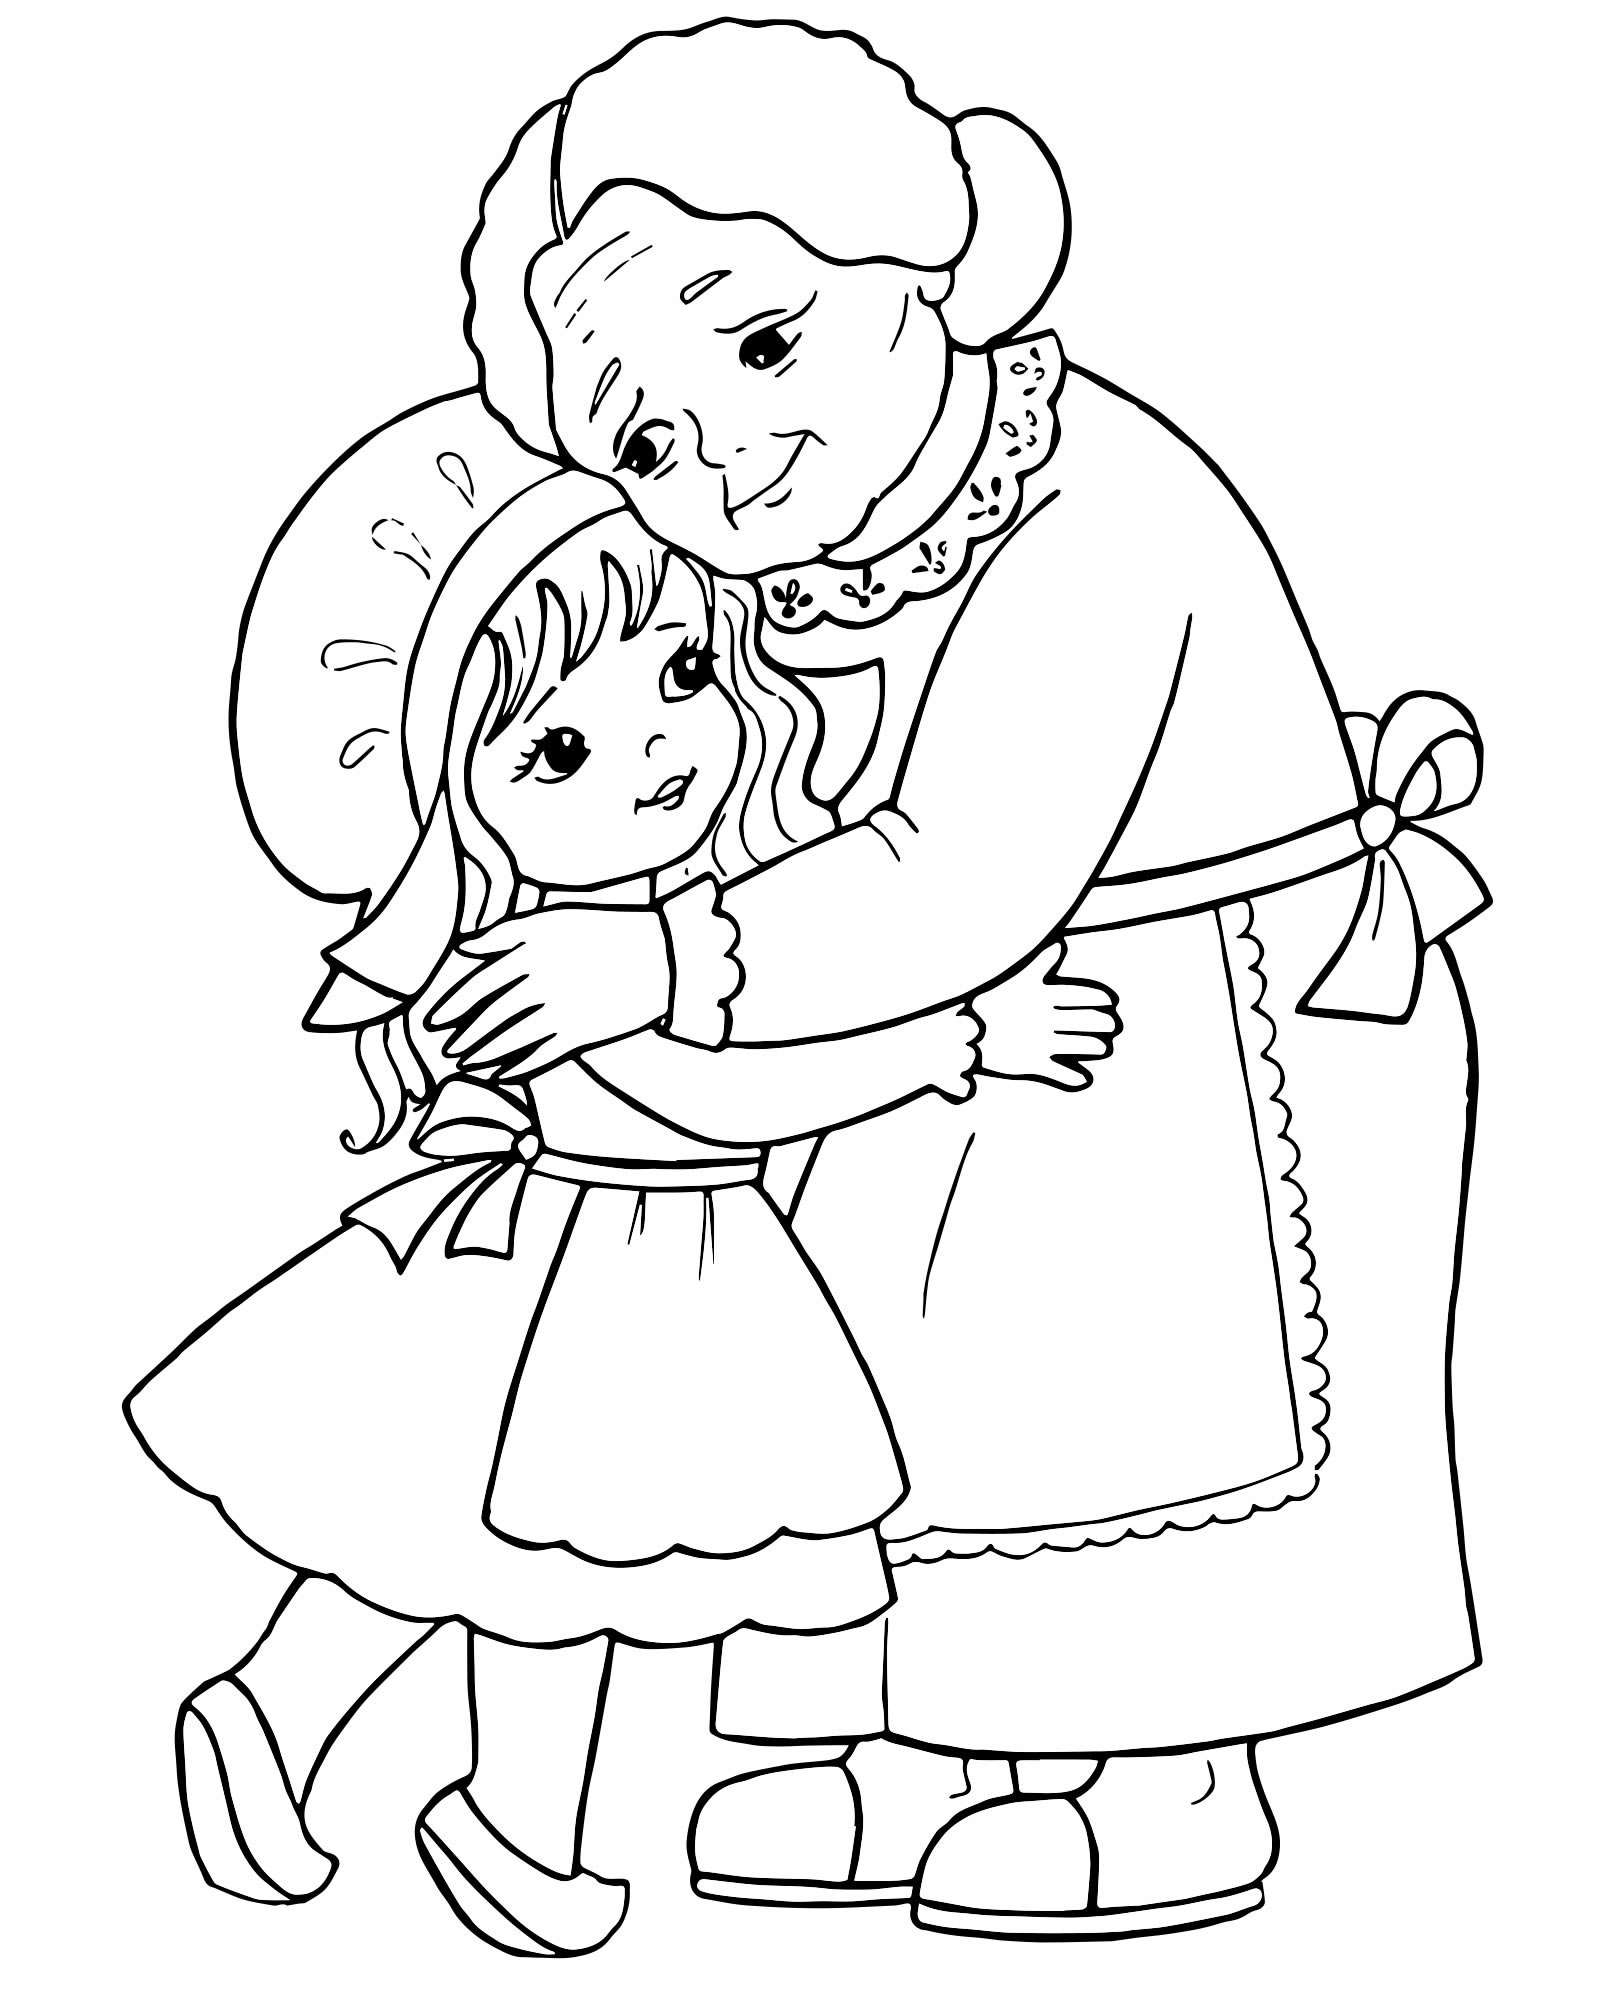 Красная Шапочка и бабушка раскраска для детей